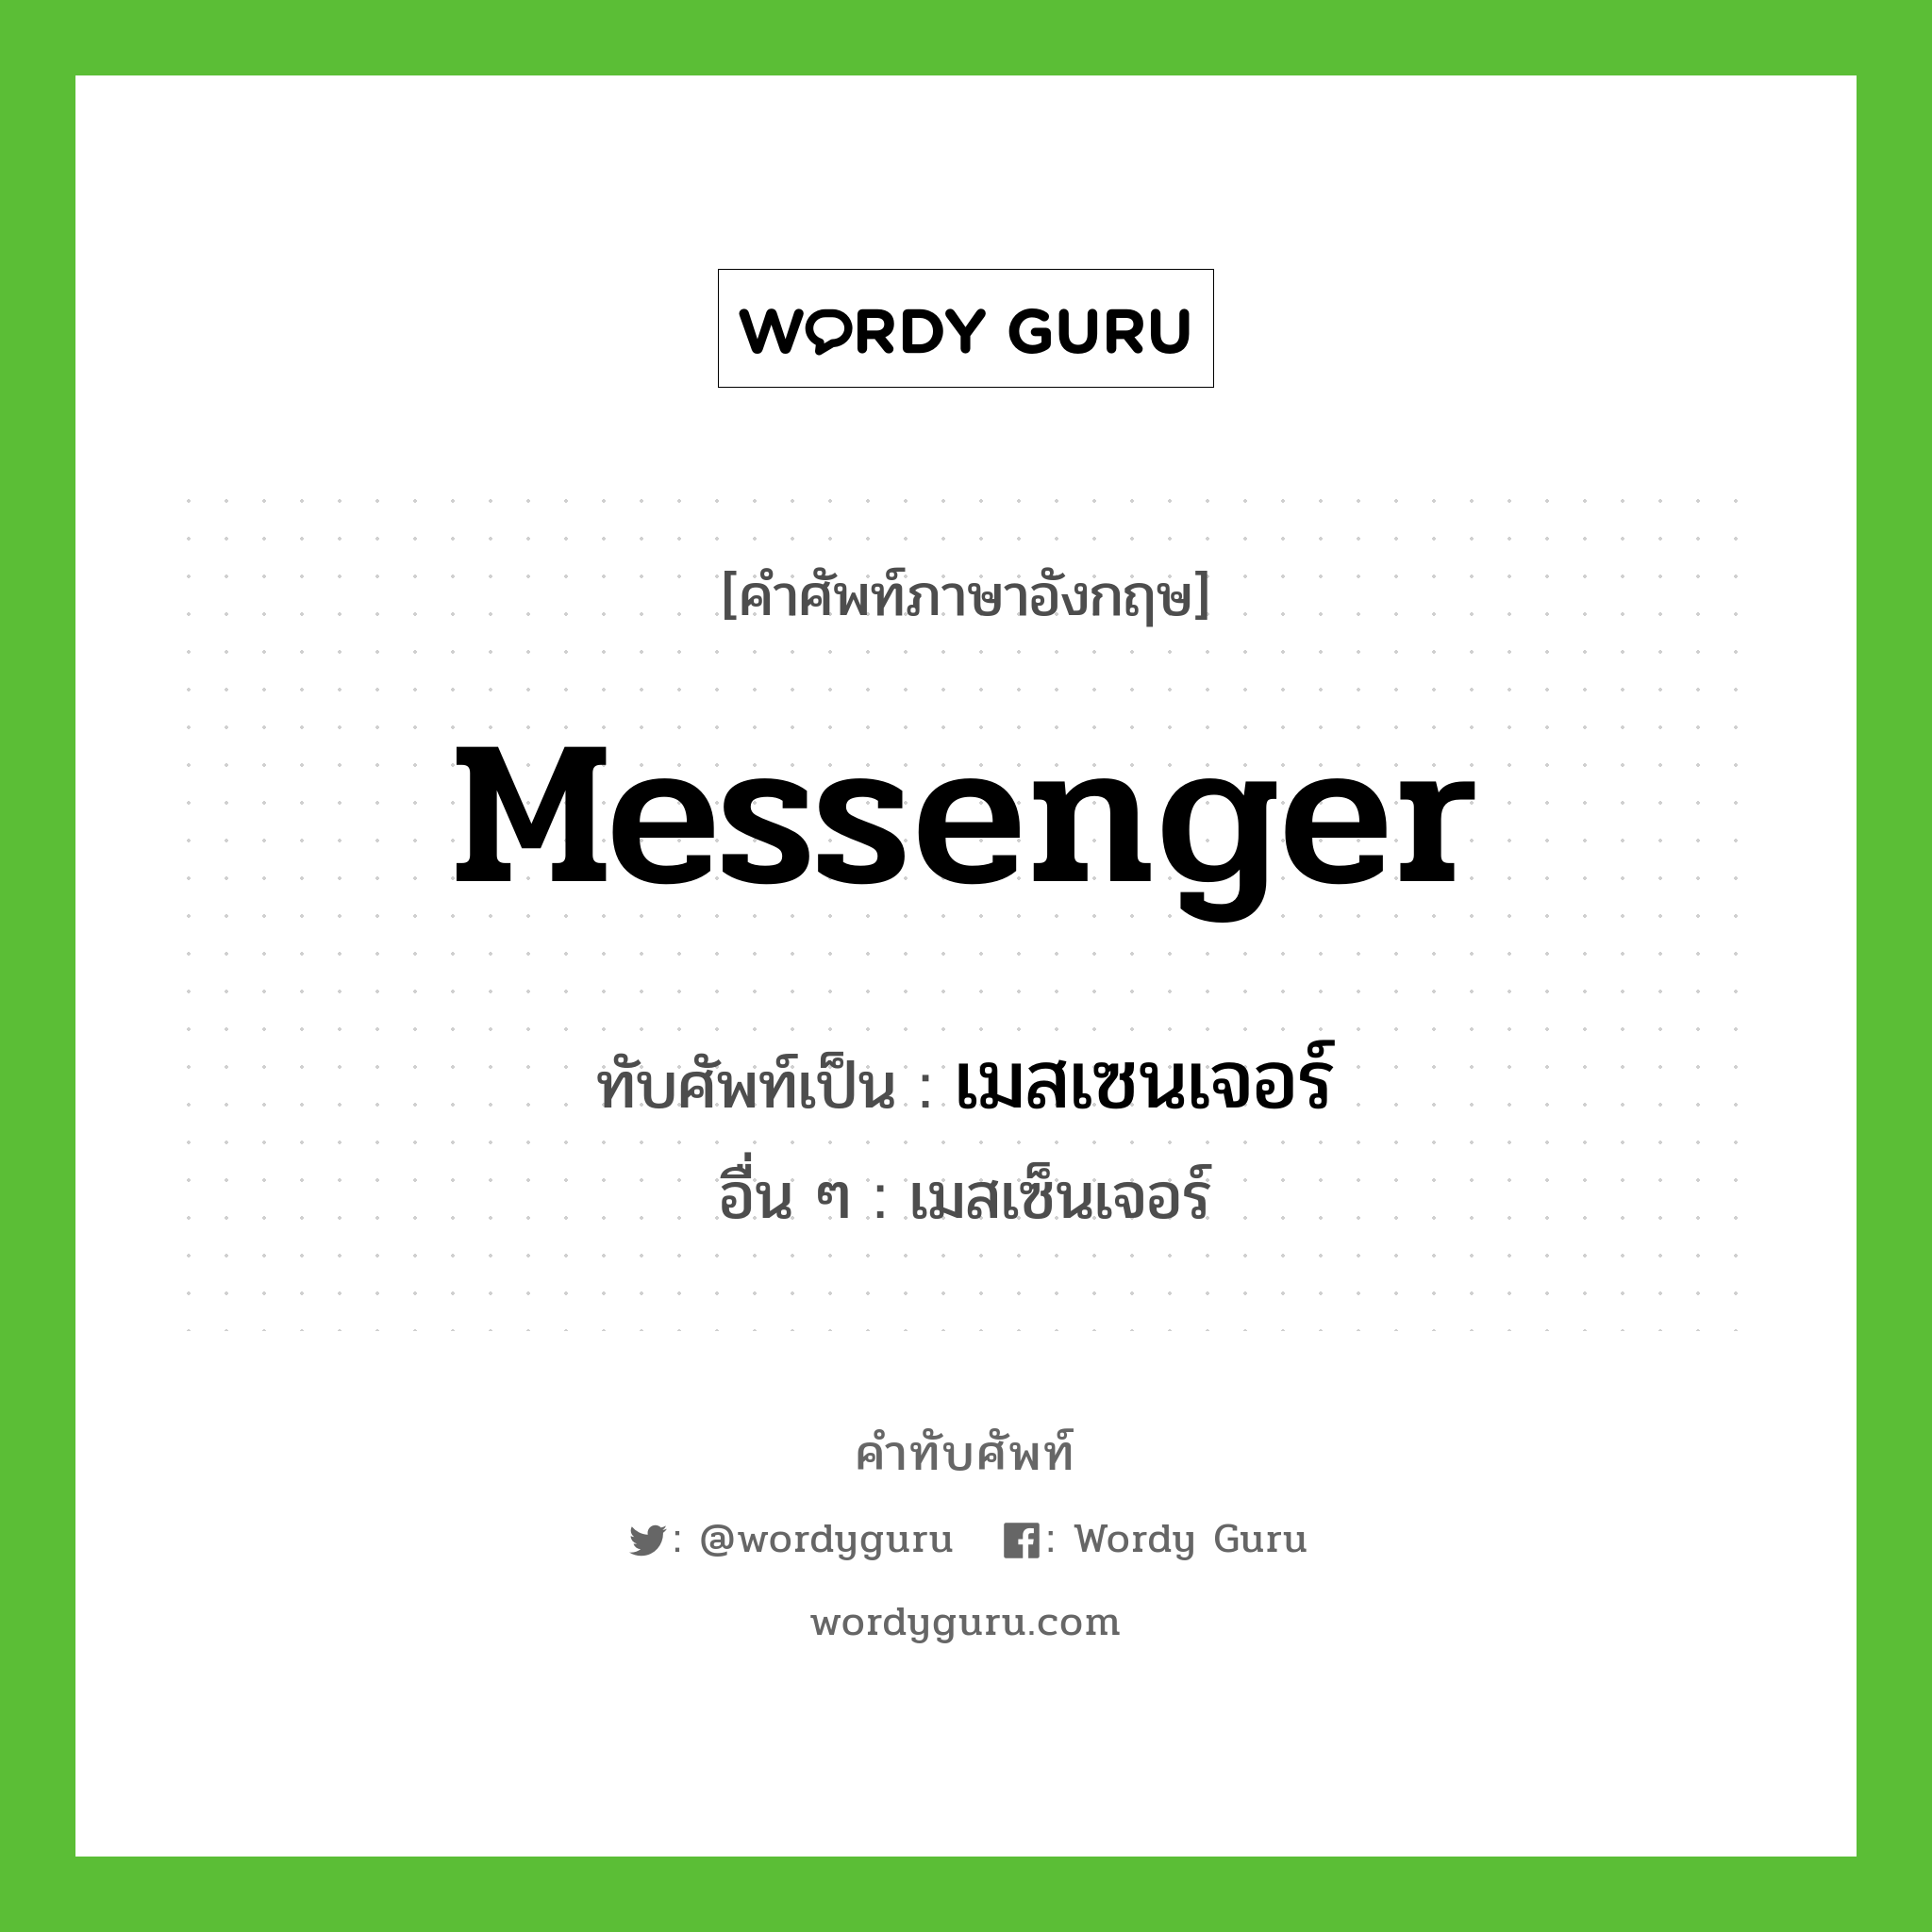 messenger เขียนเป็นคำไทยว่าอะไร?, คำศัพท์ภาษาอังกฤษ messenger ทับศัพท์เป็น เมสเซนเจอร์ อื่น ๆ เมสเซ็นเจอร์